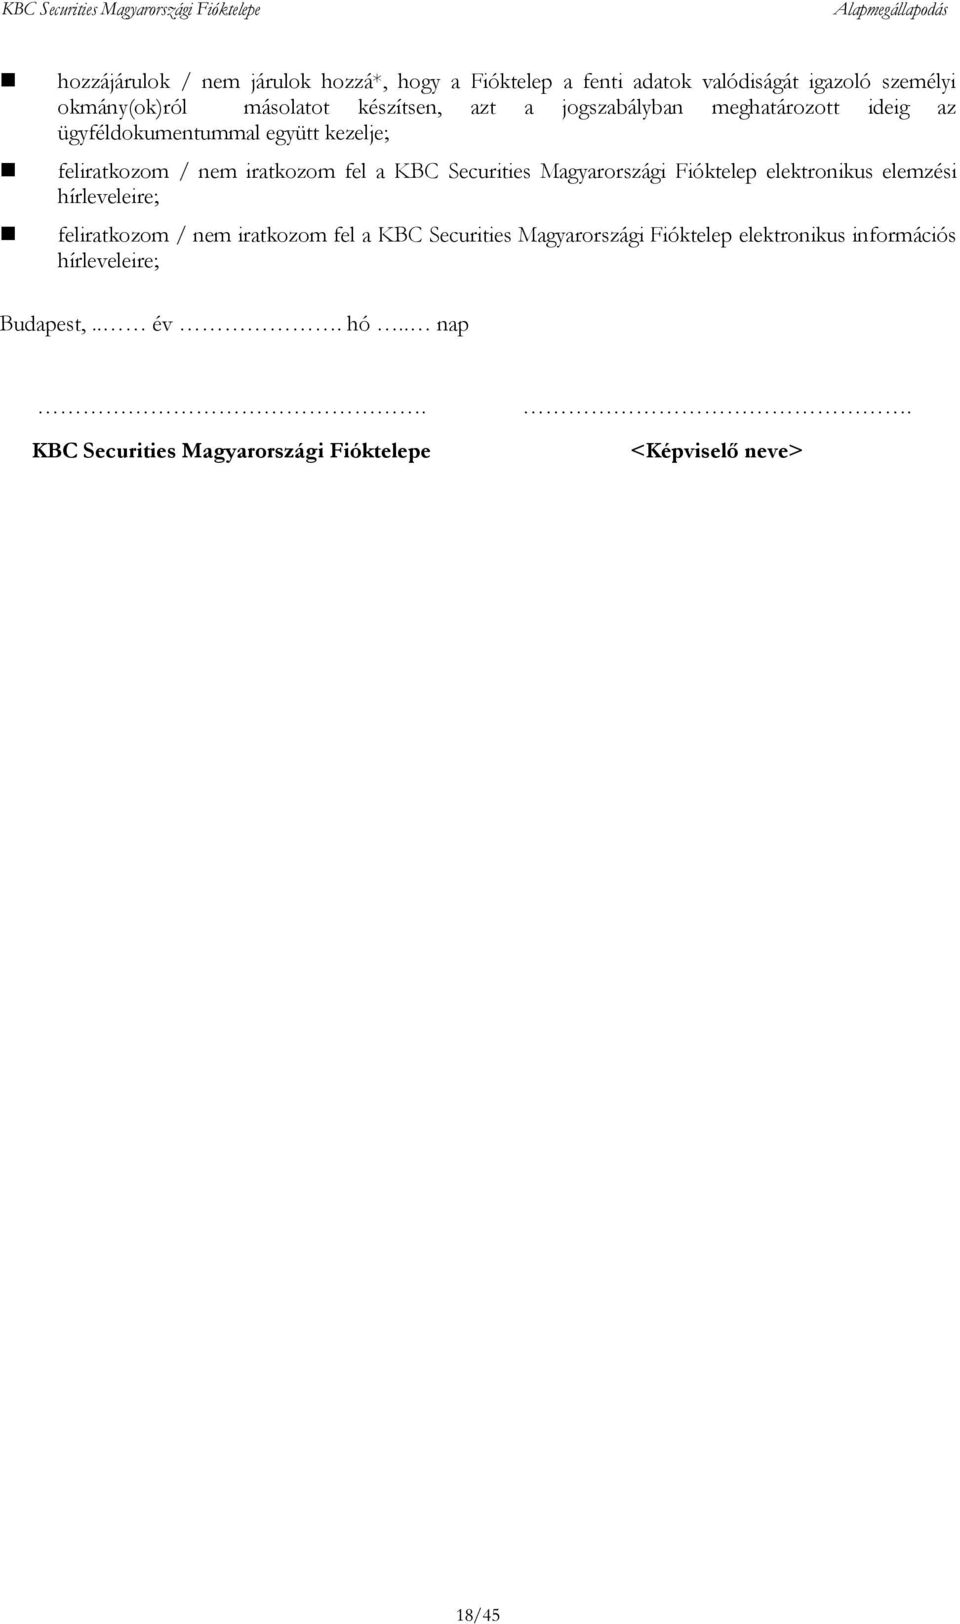 Magyarországi Fióktelep elektronikus elemzési hírleveleire; feliratkozom / nem iratkozom fel a KBC Securities Magyarországi